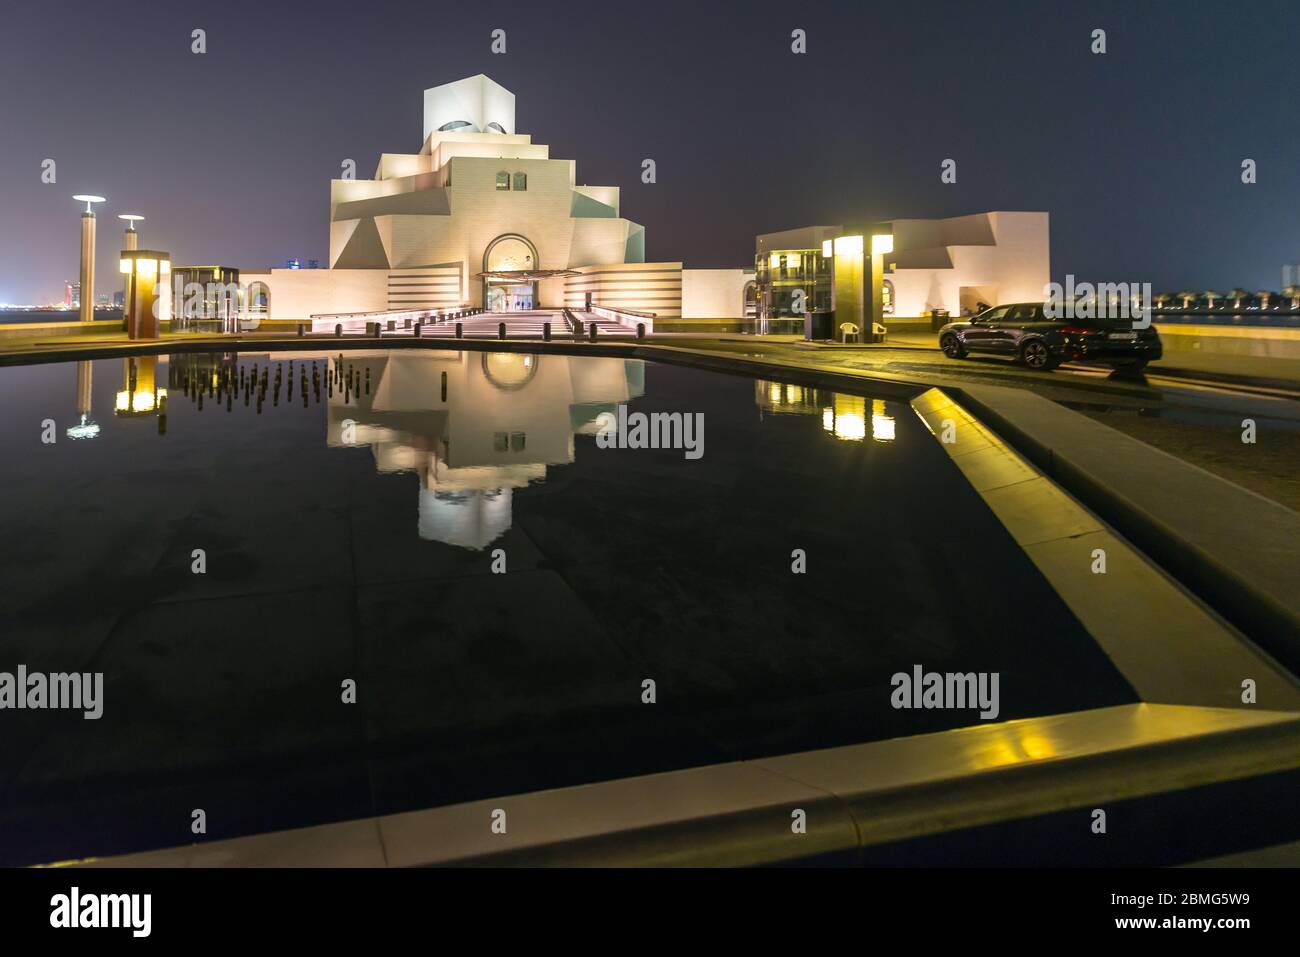 Visite du Musée d'art islamique du Qatar à Doha, dans l'eau de l'étang la nuit. Architecture futuriste près de la baie de Doha. Banque D'Images